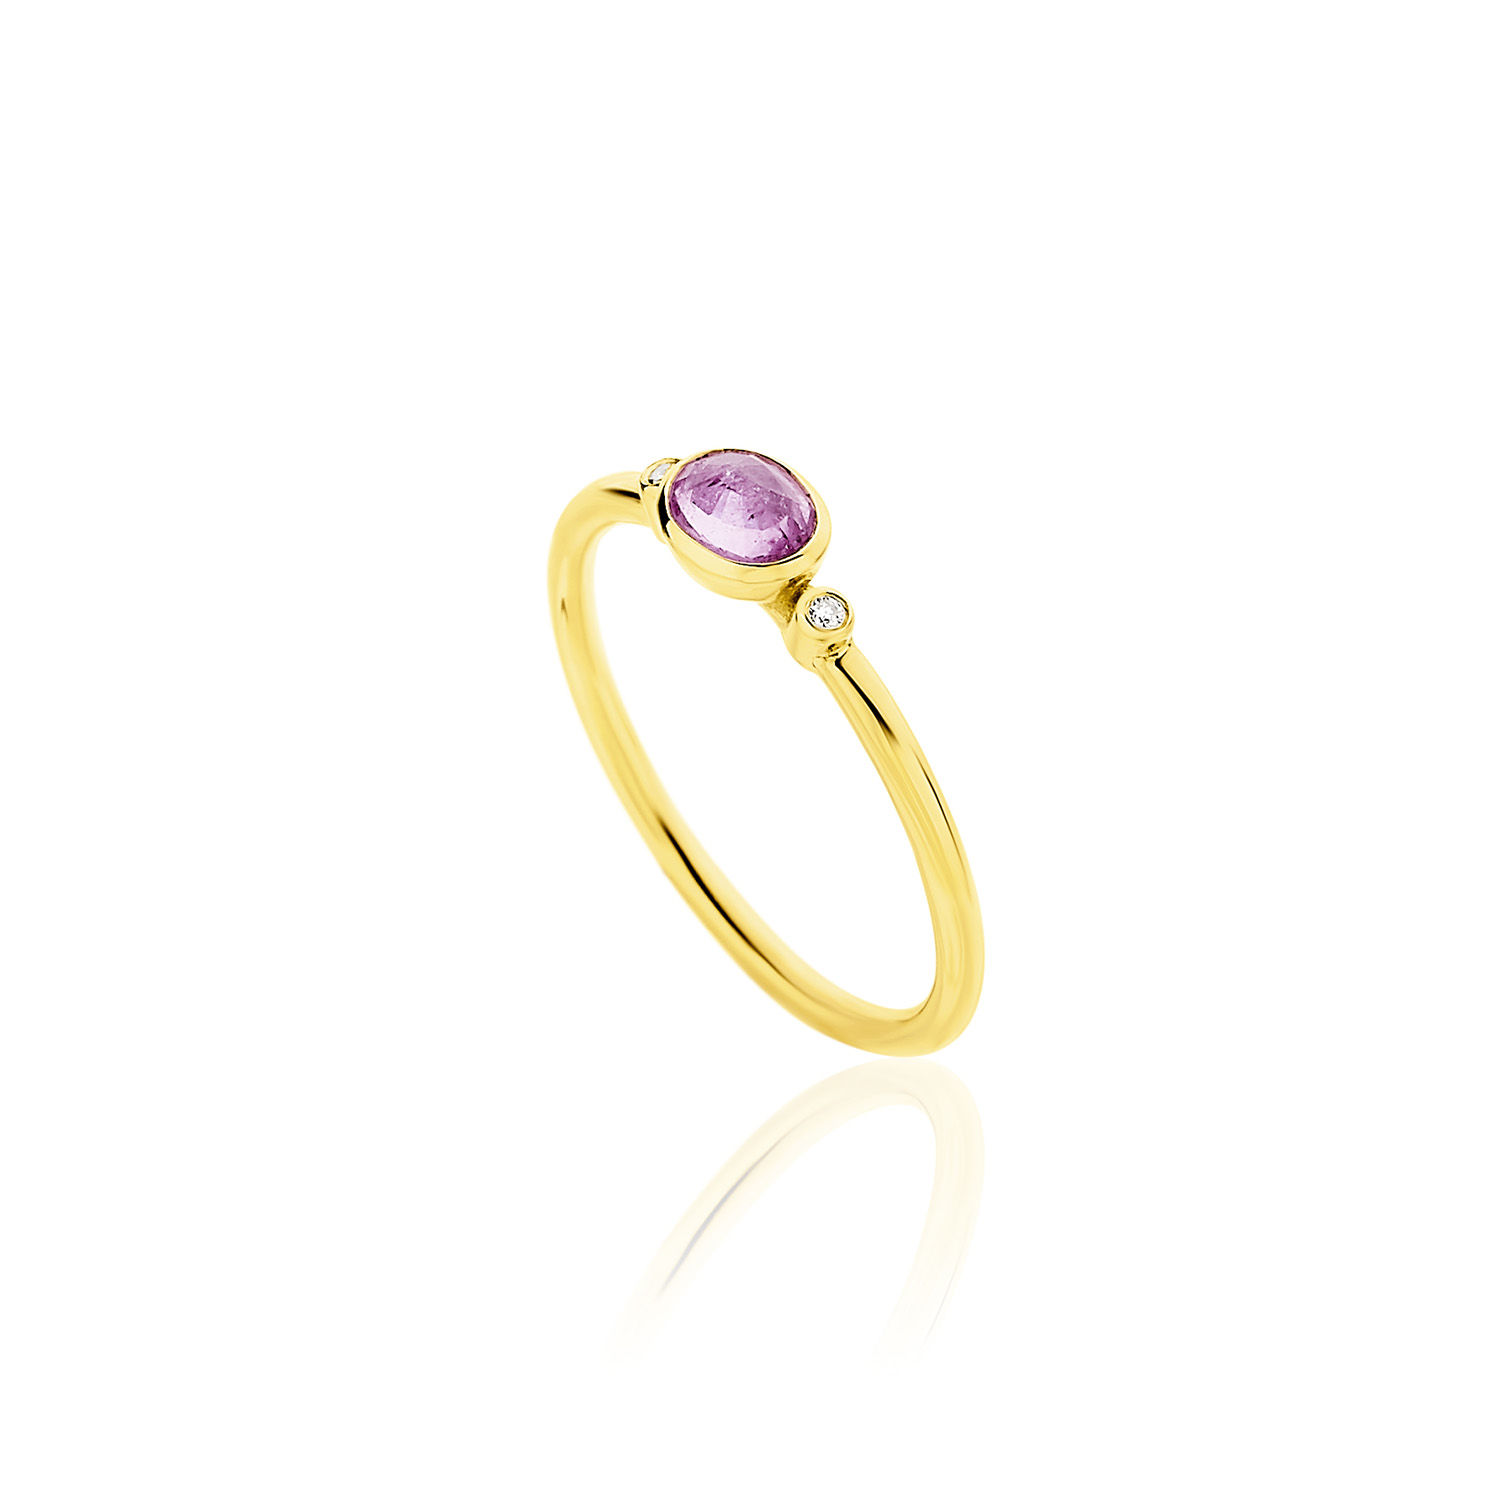 Δαχτυλίδι Gems από χρυσό 18Κ με ροζ ζαφείρι και διαμάντια μπριγιάν